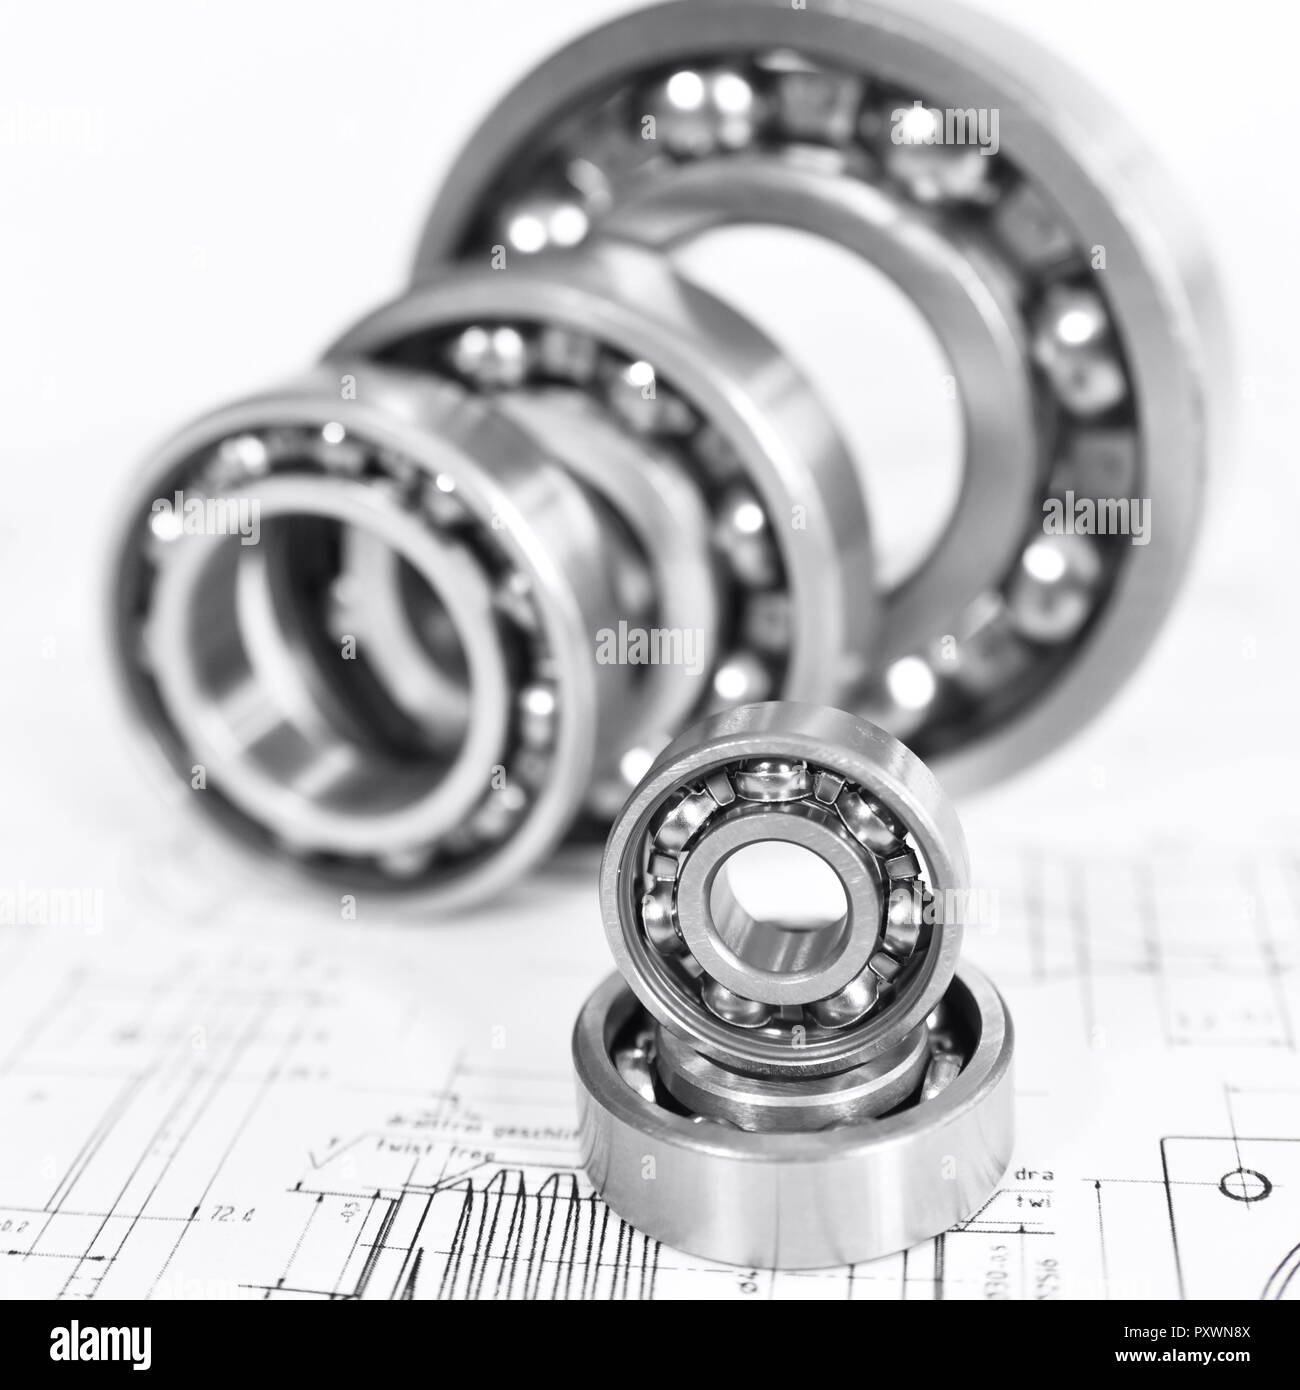 Controllo di qualità nella moderna ingegneria meccanica - Disegno tecnico e cuscinetti a sfera su sfondo bianco Foto Stock